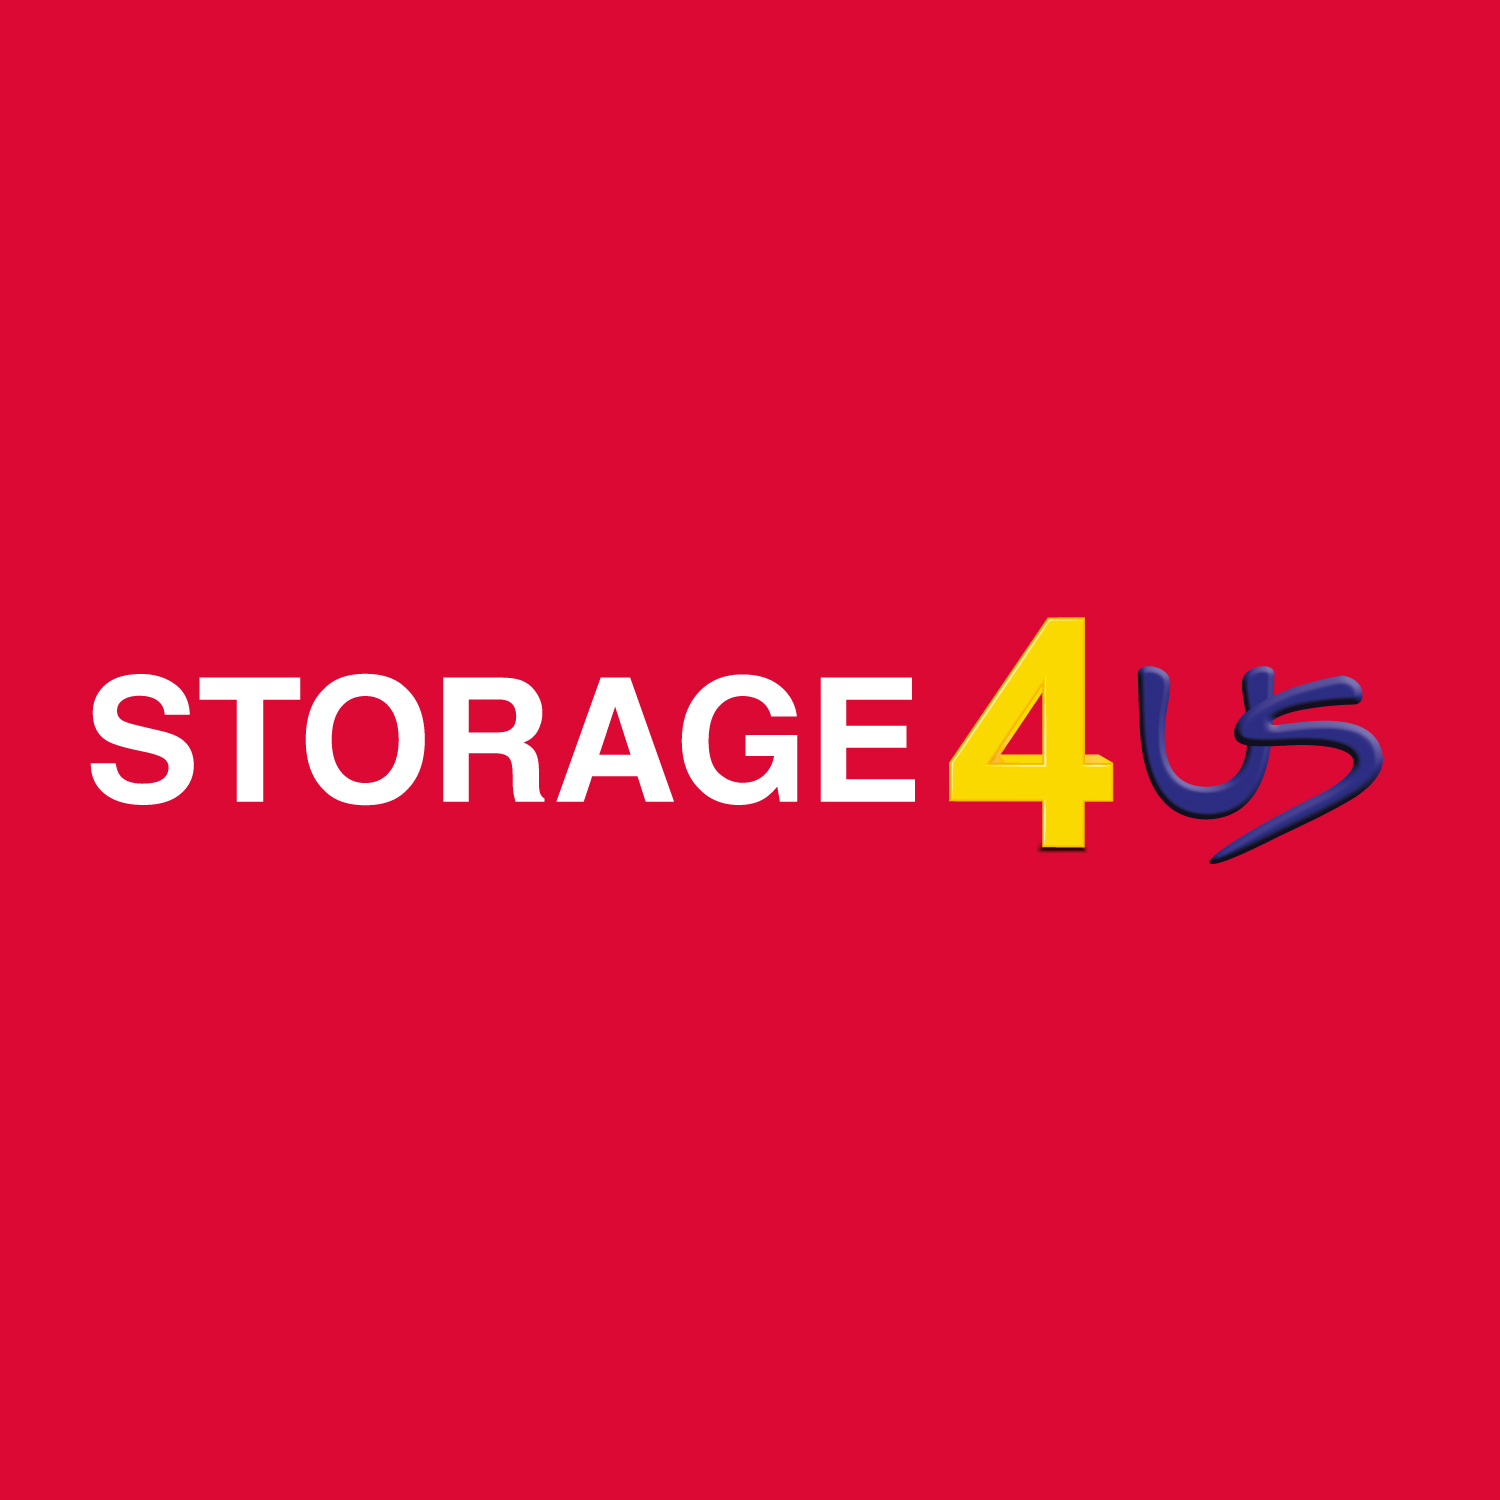 Storage 4 Us 01